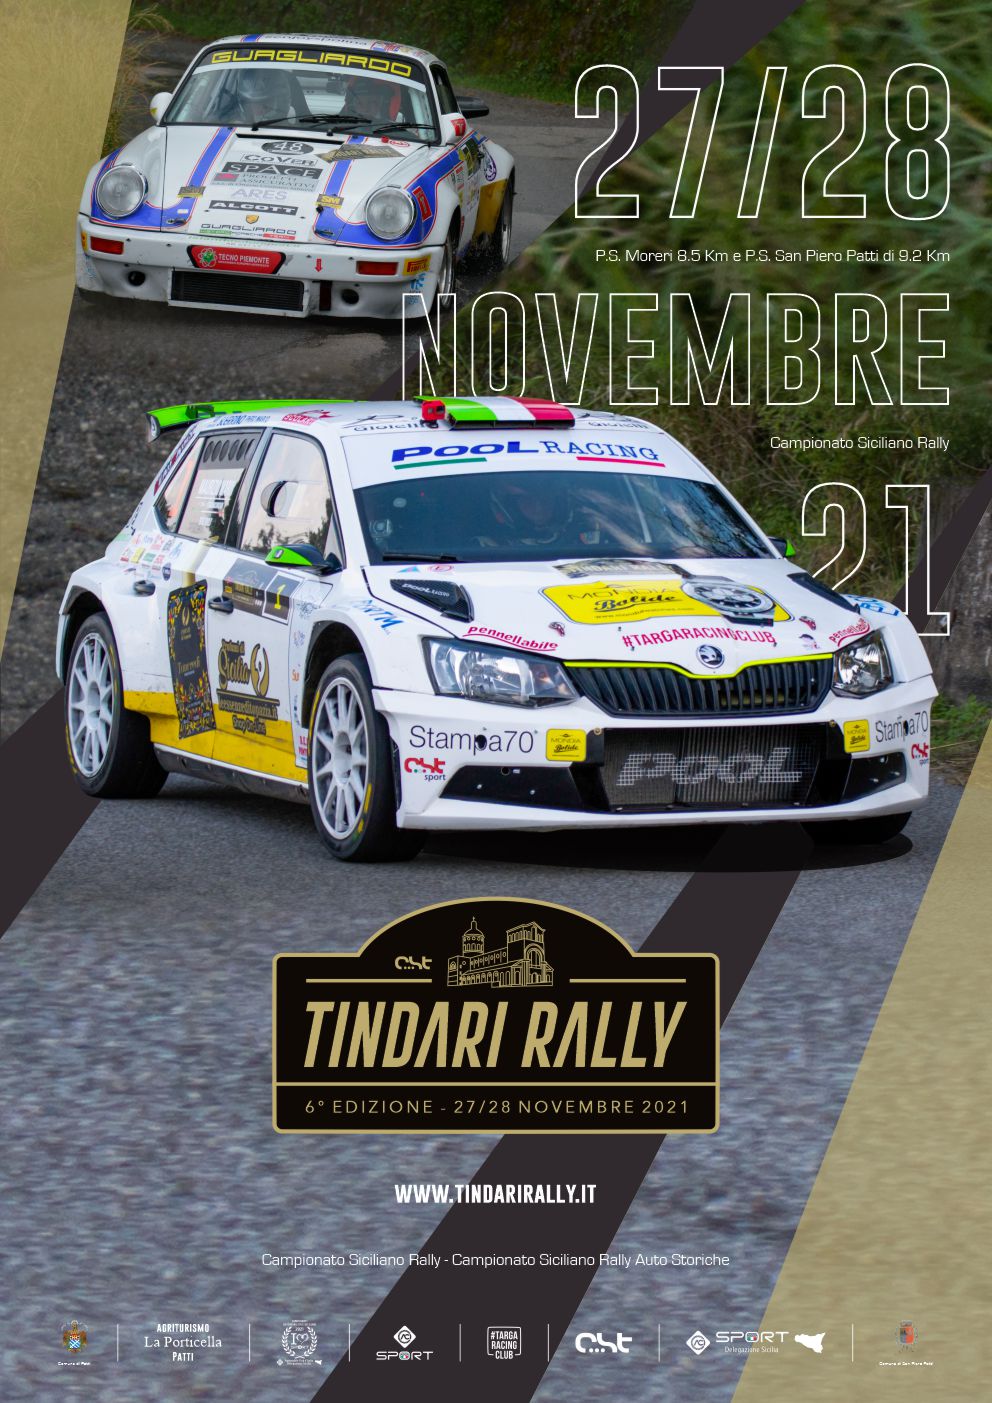 Tindari Rally 2021